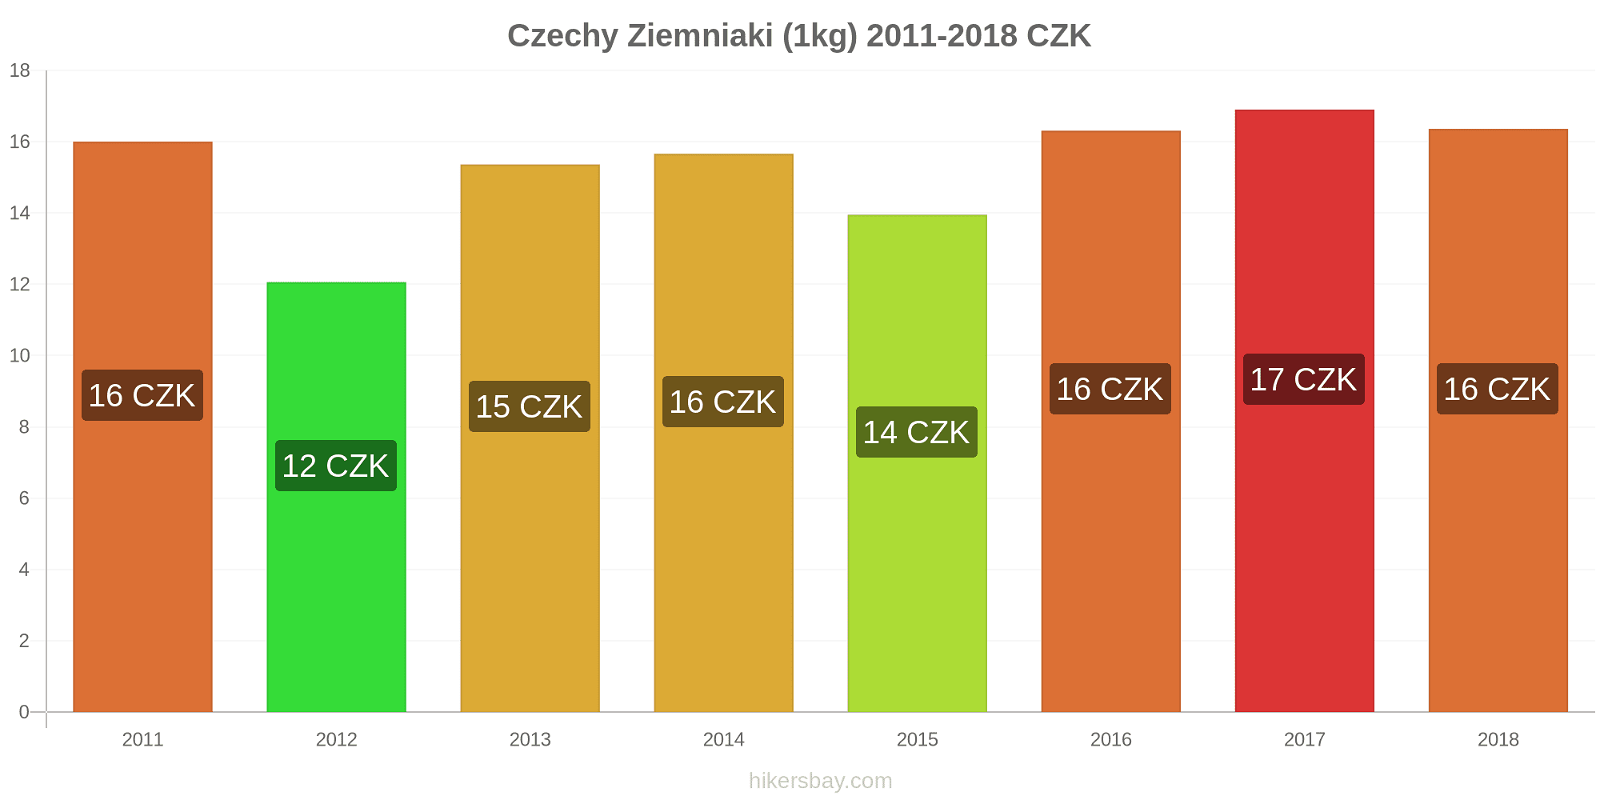 Czechy zmiany cen Ziemniaki (1kg) hikersbay.com